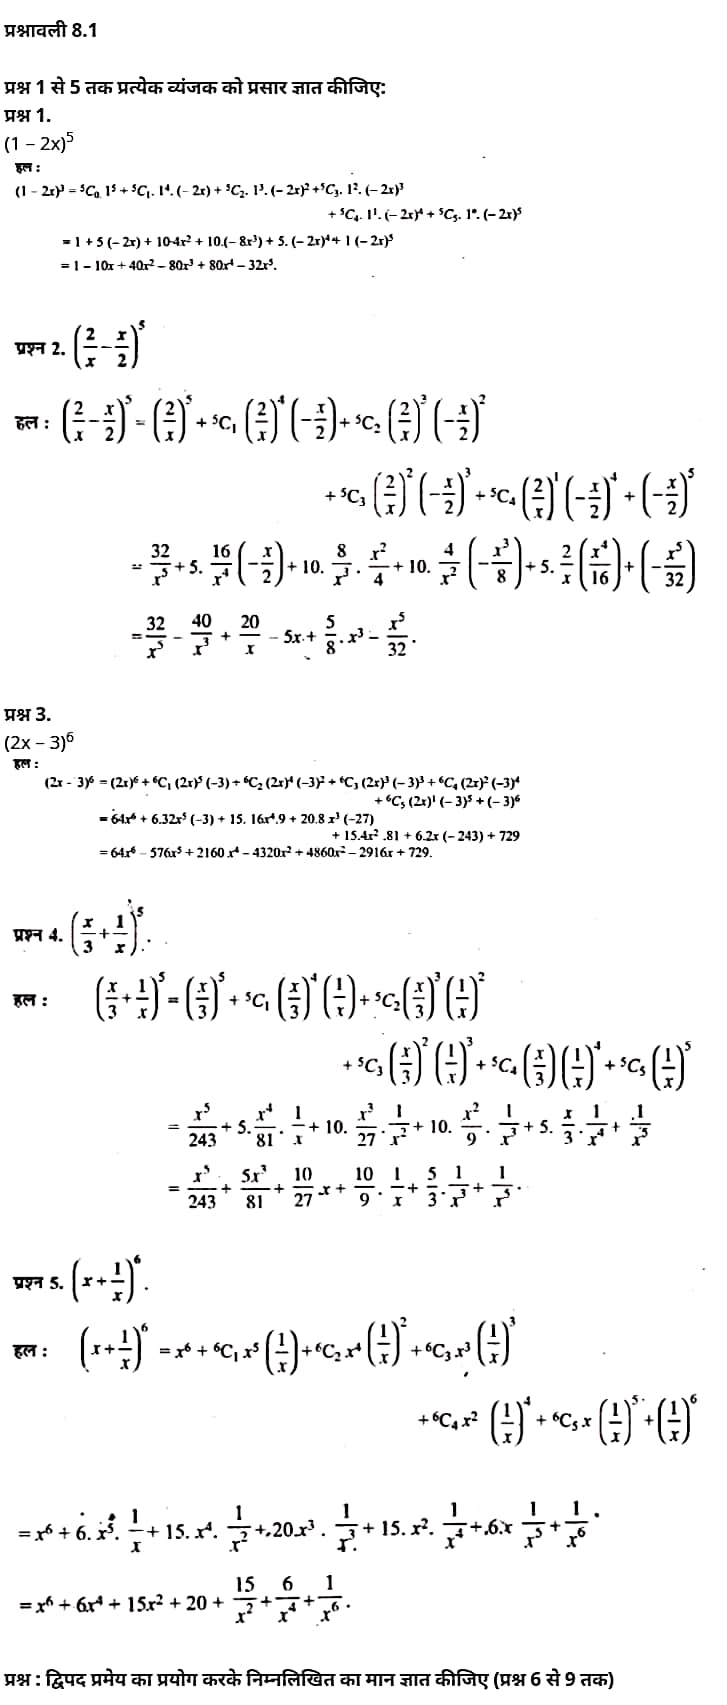 द्विपद प्रमेय,  द्विपद प्रमेय सवाल,  द्विपद वितरण,  द्विपद बंटन की परिभाषा,  द्विपद और प्वाइजन वितरण,  द्विपद गुणांक के गुणों,  द्विपद बंटन की विशेषता,  द्विपद वितरण क्या है,  द्वीपद प्रमेय,   Binomial Theorem,  binomial theorem proof,  binomial theorem problems,  binomial theorem pdf,  binomial theorem formula class 11, binomial theorem examples,  binomial theorem derivation,  binomial theorem definition,  binomial theorem class 11,   Class 11 matha Chapter 8,  class 11 matha chapter 8, ncert solutions in hindi,  class 11 matha chapter 8, notes in hindi,  class 11 matha chapter 8, question answer,  class 11 matha chapter 8, notes,  11 class matha chapter 8, in hindi,  class 11 matha chapter 8, in hindi,  class 11 matha chapter 8, important questions in hindi,  class 11 matha notes in hindi,   matha class 11 notes pdf,  matha Class 11 Notes 2021 NCERT,  matha Class 11 PDF,  matha book,  matha Quiz Class 11,  11th matha book up board,  up Board 11th matha Notes,  कक्षा 11 मैथ्स अध्याय 8,  कक्षा 11 मैथ्स का अध्याय 8, ncert solution in hindi,  कक्षा 11 मैथ्स के अध्याय 8, के नोट्स हिंदी में,  कक्षा 11 का मैथ्स अध्याय 8, का प्रश्न उत्तर,  कक्षा 11 मैथ्स अध्याय 8, के नोट्स,  11 कक्षा मैथ्स अध्याय 8, हिंदी में,  कक्षा 11 मैथ्स अध्याय 8, हिंदी में,  कक्षा 11 मैथ्स अध्याय 8, महत्वपूर्ण प्रश्न हिंदी में,  कक्षा 11 के मैथ्स के नोट्स हिंदी में,  मैथ्स कक्षा 11 नोट्स pdf,  मैथ्स कक्षा 11 नोट्स 2021 NCERT,  मैथ्स कक्षा 11 PDF,  मैथ्स पुस्तक,  मैथ्स की बुक,  मैथ्स प्रश्नोत्तरी Class 11, 11 वीं मैथ्स पुस्तक up board,  बिहार बोर्ड 11 वीं मैथ्स नोट्स,   कक्षा 11 गणित अध्याय 8,  कक्षा 11 गणित का अध्याय 8, ncert solution in hindi,  कक्षा 11 गणित के अध्याय 8, के नोट्स हिंदी में,  कक्षा 11 का गणित अध्याय 8, का प्रश्न उत्तर,  कक्षा 11 गणित अध्याय 8, के नोट्स,  11 कक्षा गणित अध्याय 8, हिंदी में,  कक्षा 11 गणित अध्याय 8, हिंदी में,  कक्षा 11 गणित अध्याय 8, महत्वपूर्ण प्रश्न हिंदी में,  कक्षा 11 के गणित के नोट्स हिंदी में,